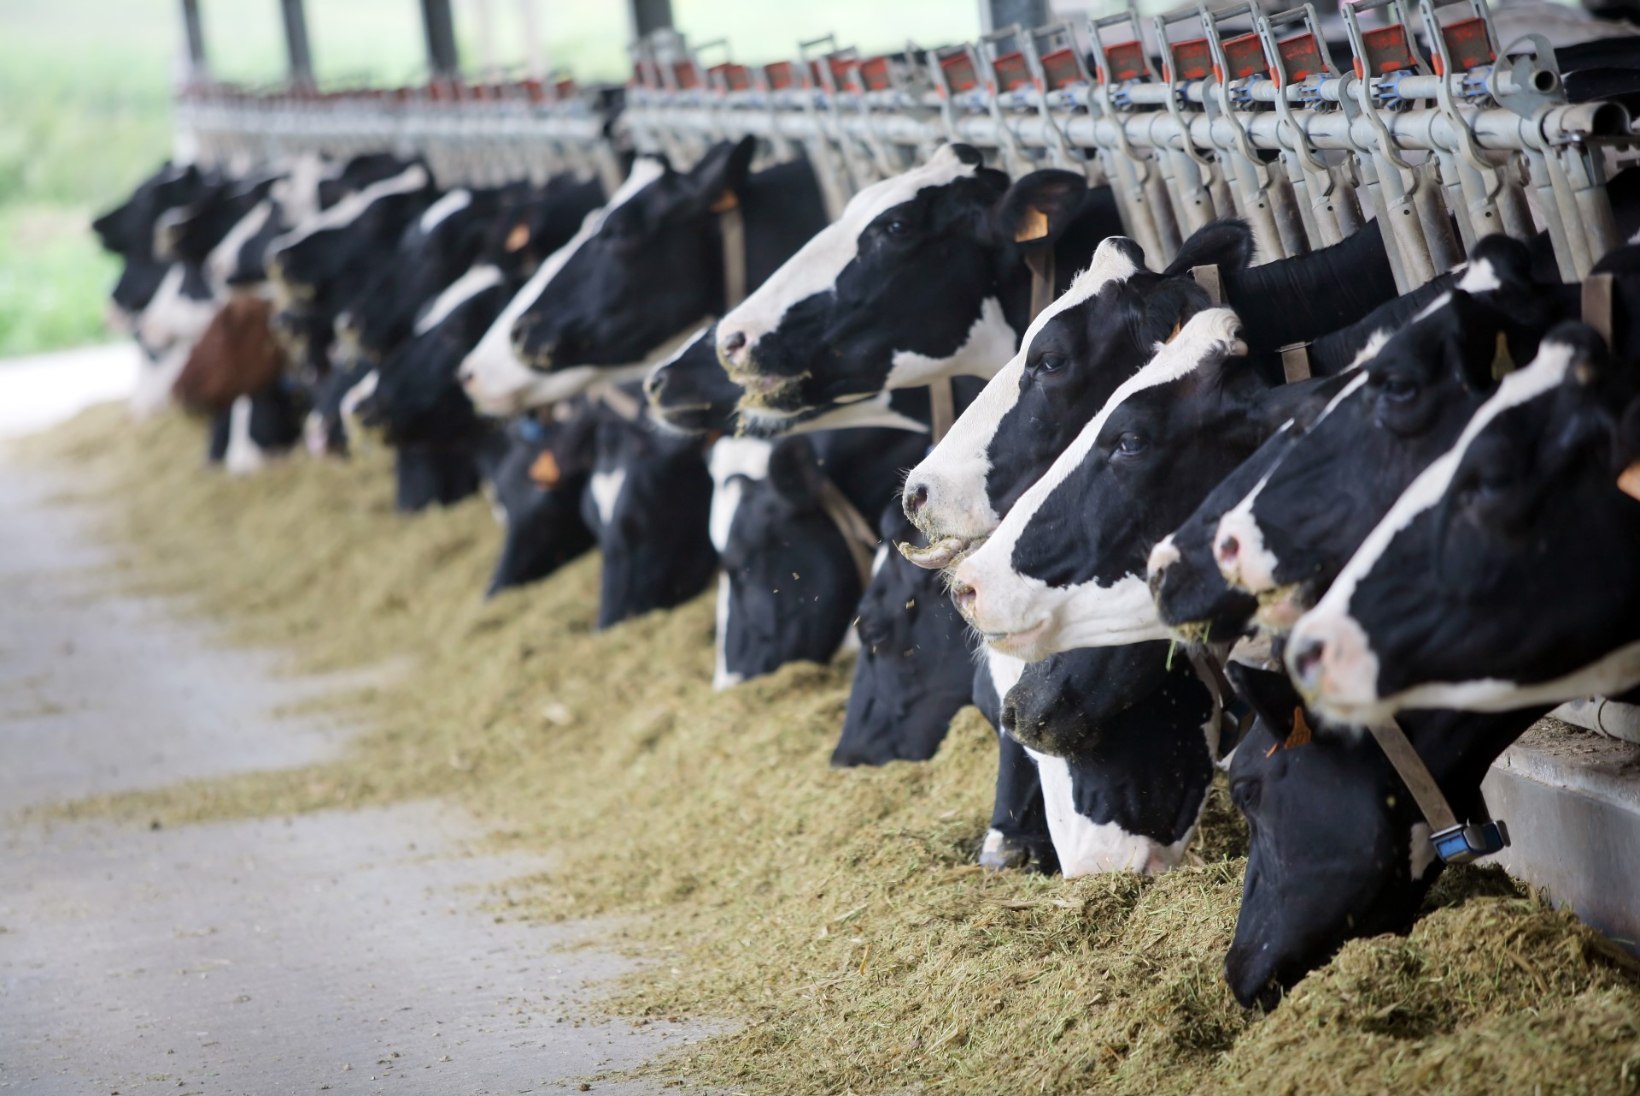 Piimatootja: haigete või ravimikuuril olevate lehmade piim pakki ei jõua